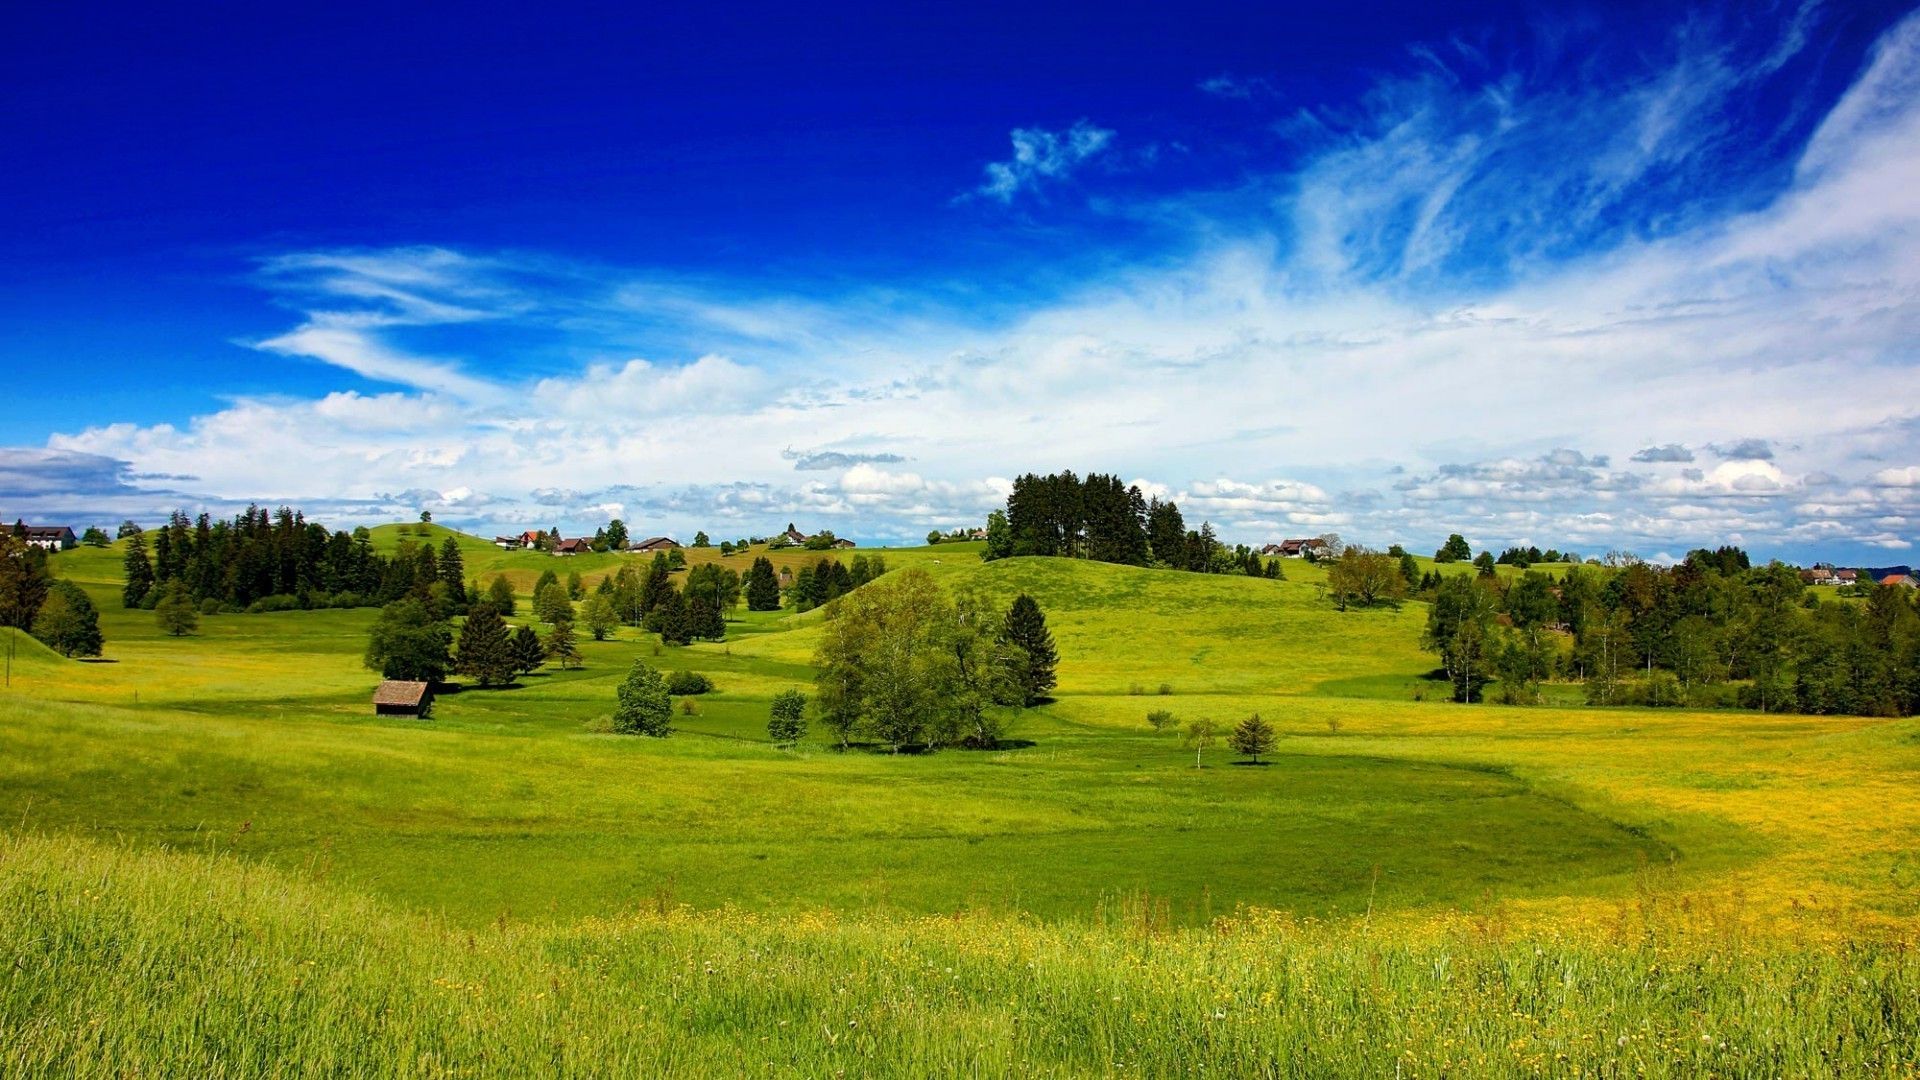 Green field, trees, blue sky